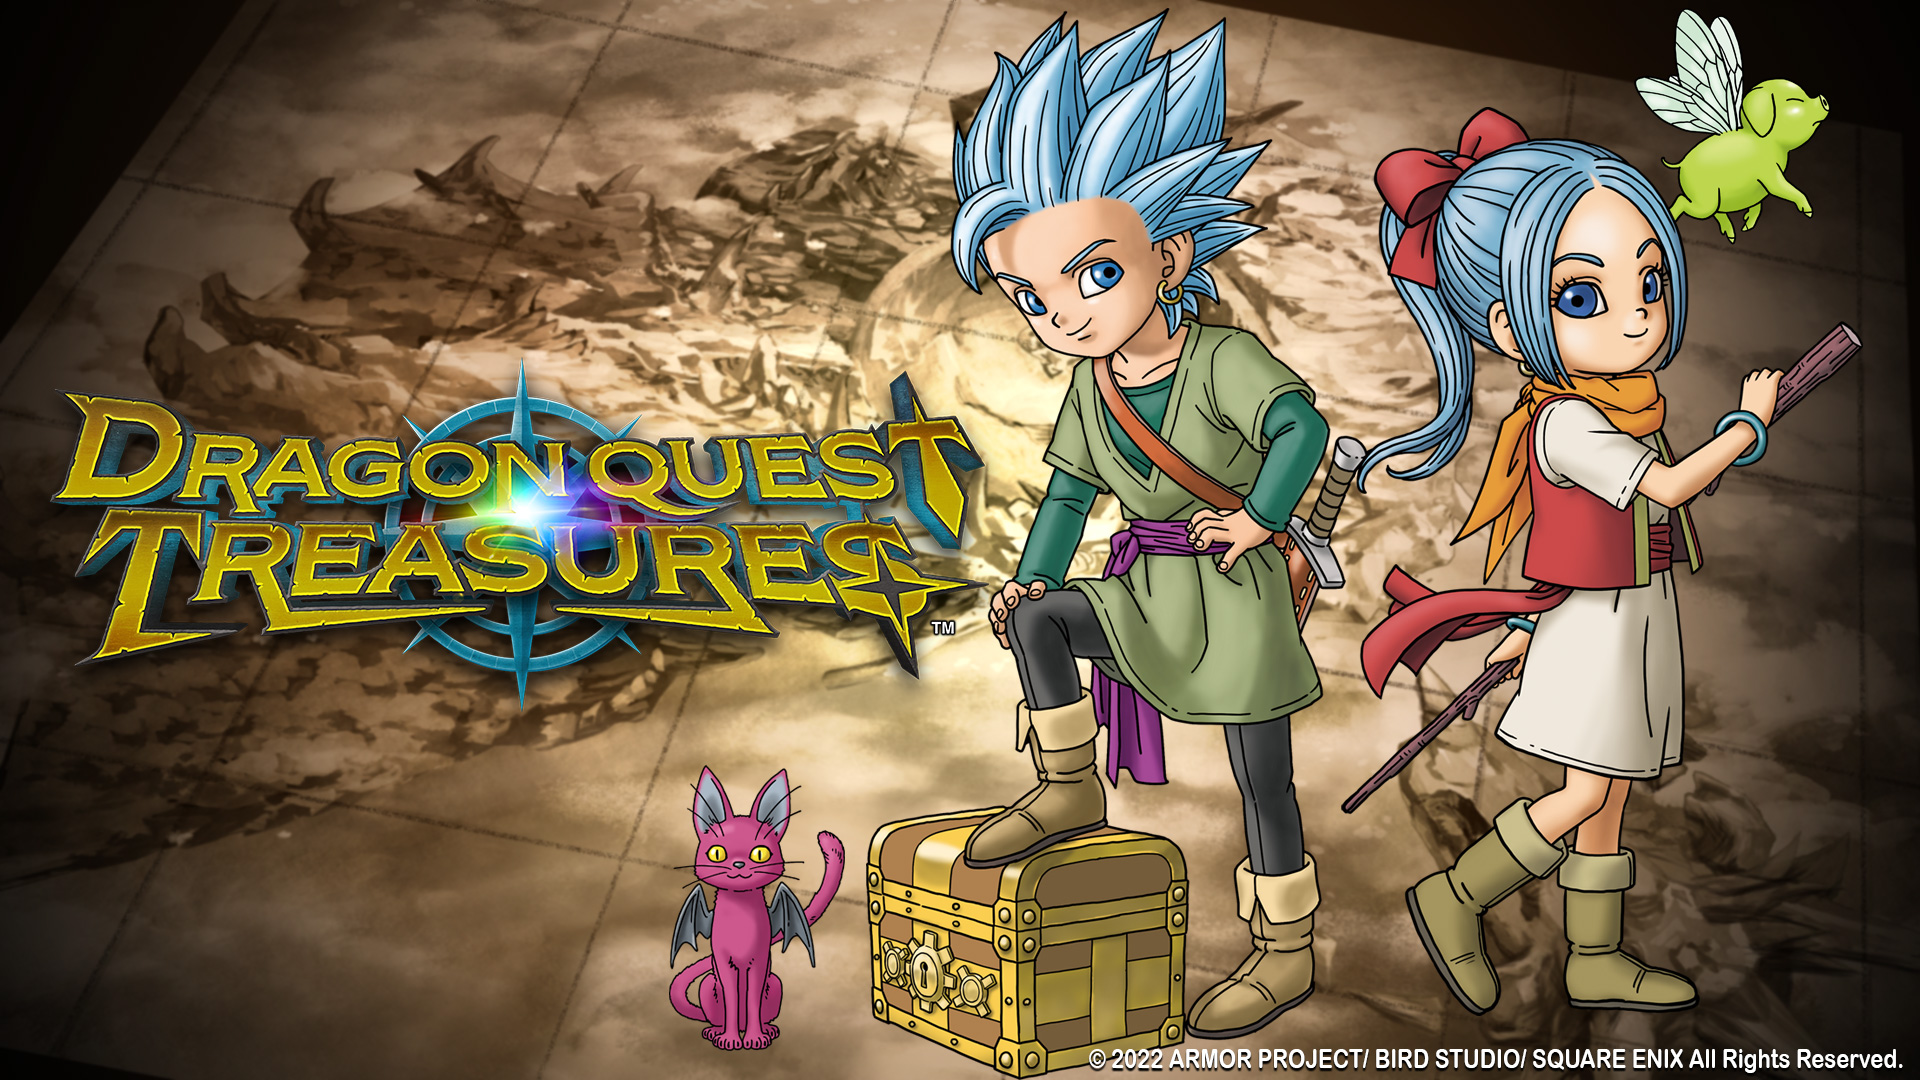 Dragon quest treasures key art 2